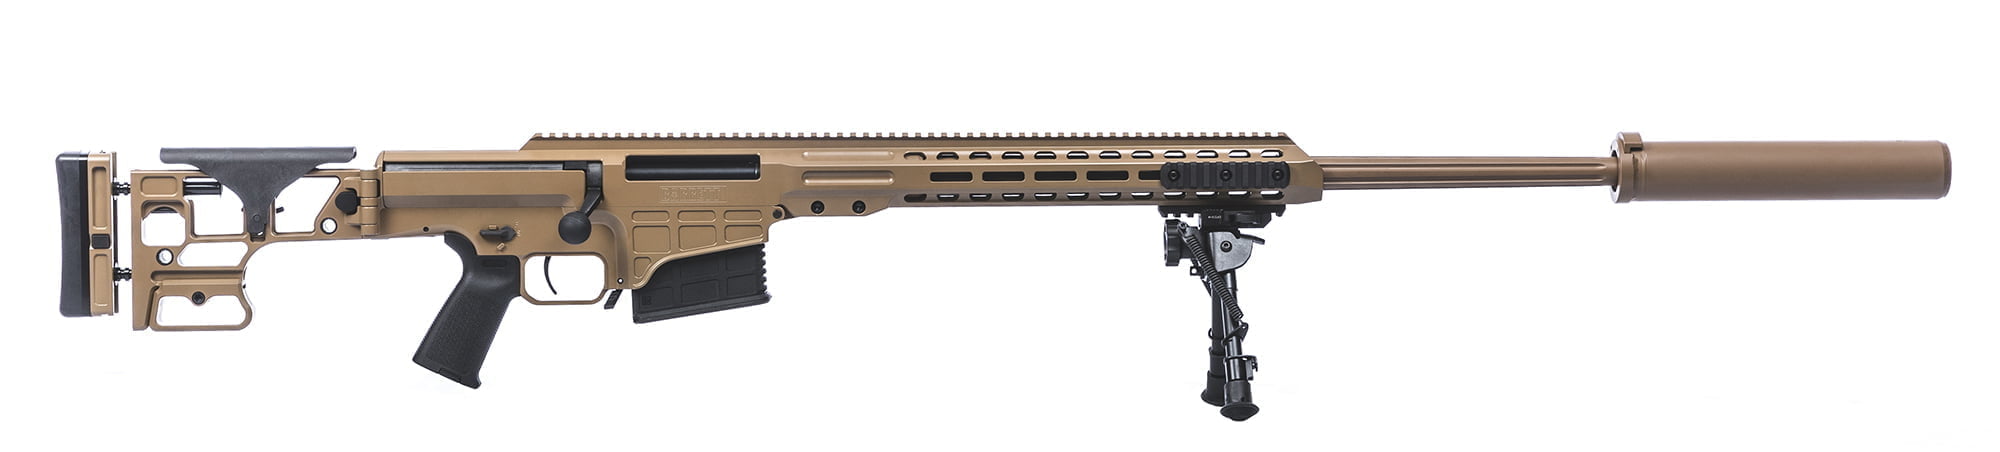 BarrettMK22 - USA Gun Shop